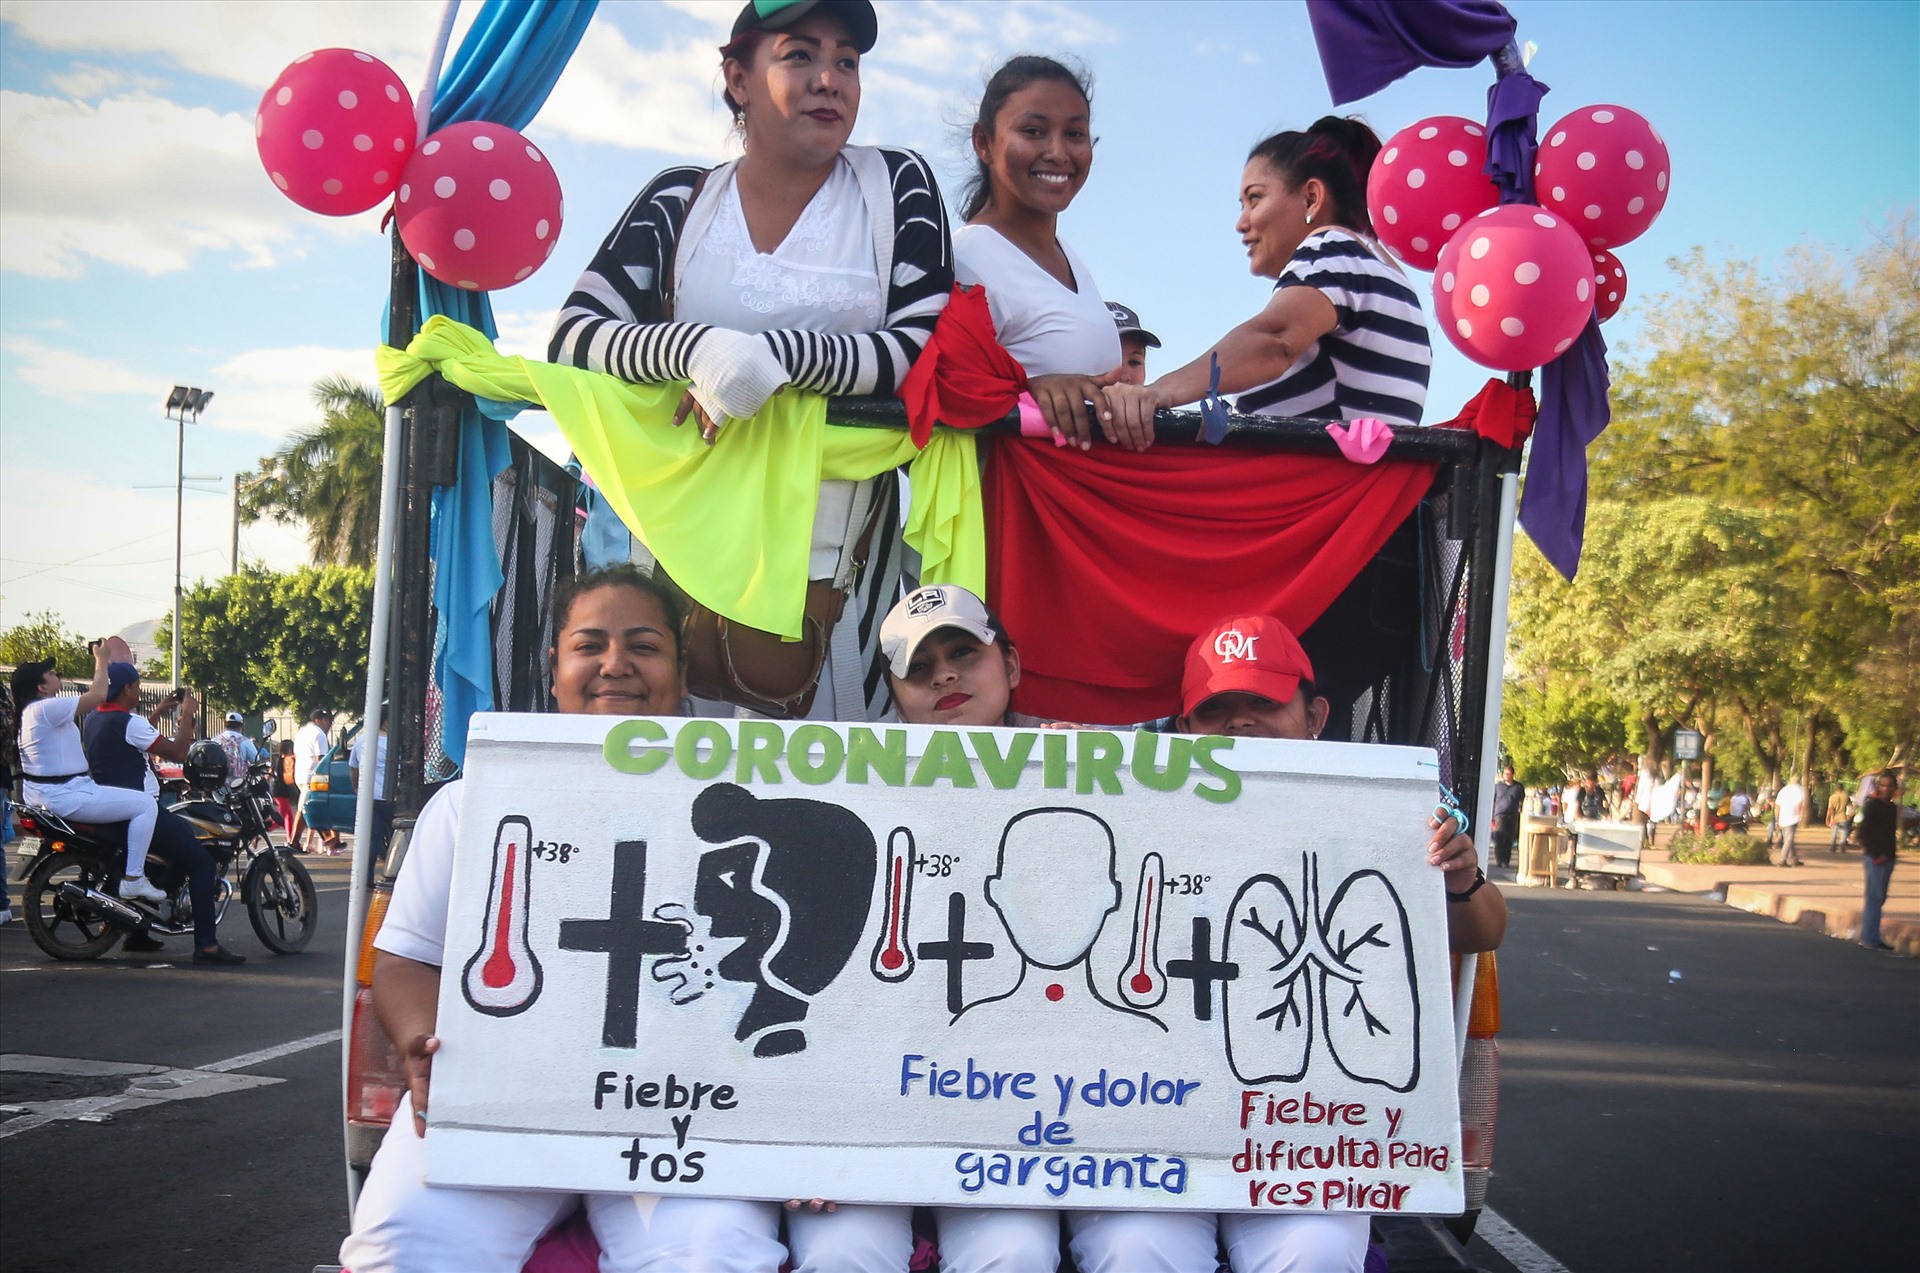 Những người tham gia míttinh với khẩu hiệu “Diễu hành yêu thương thời COVID-19” tại Managua hôm 14.3. Ảnh: CNN/AFP/ Getty Images